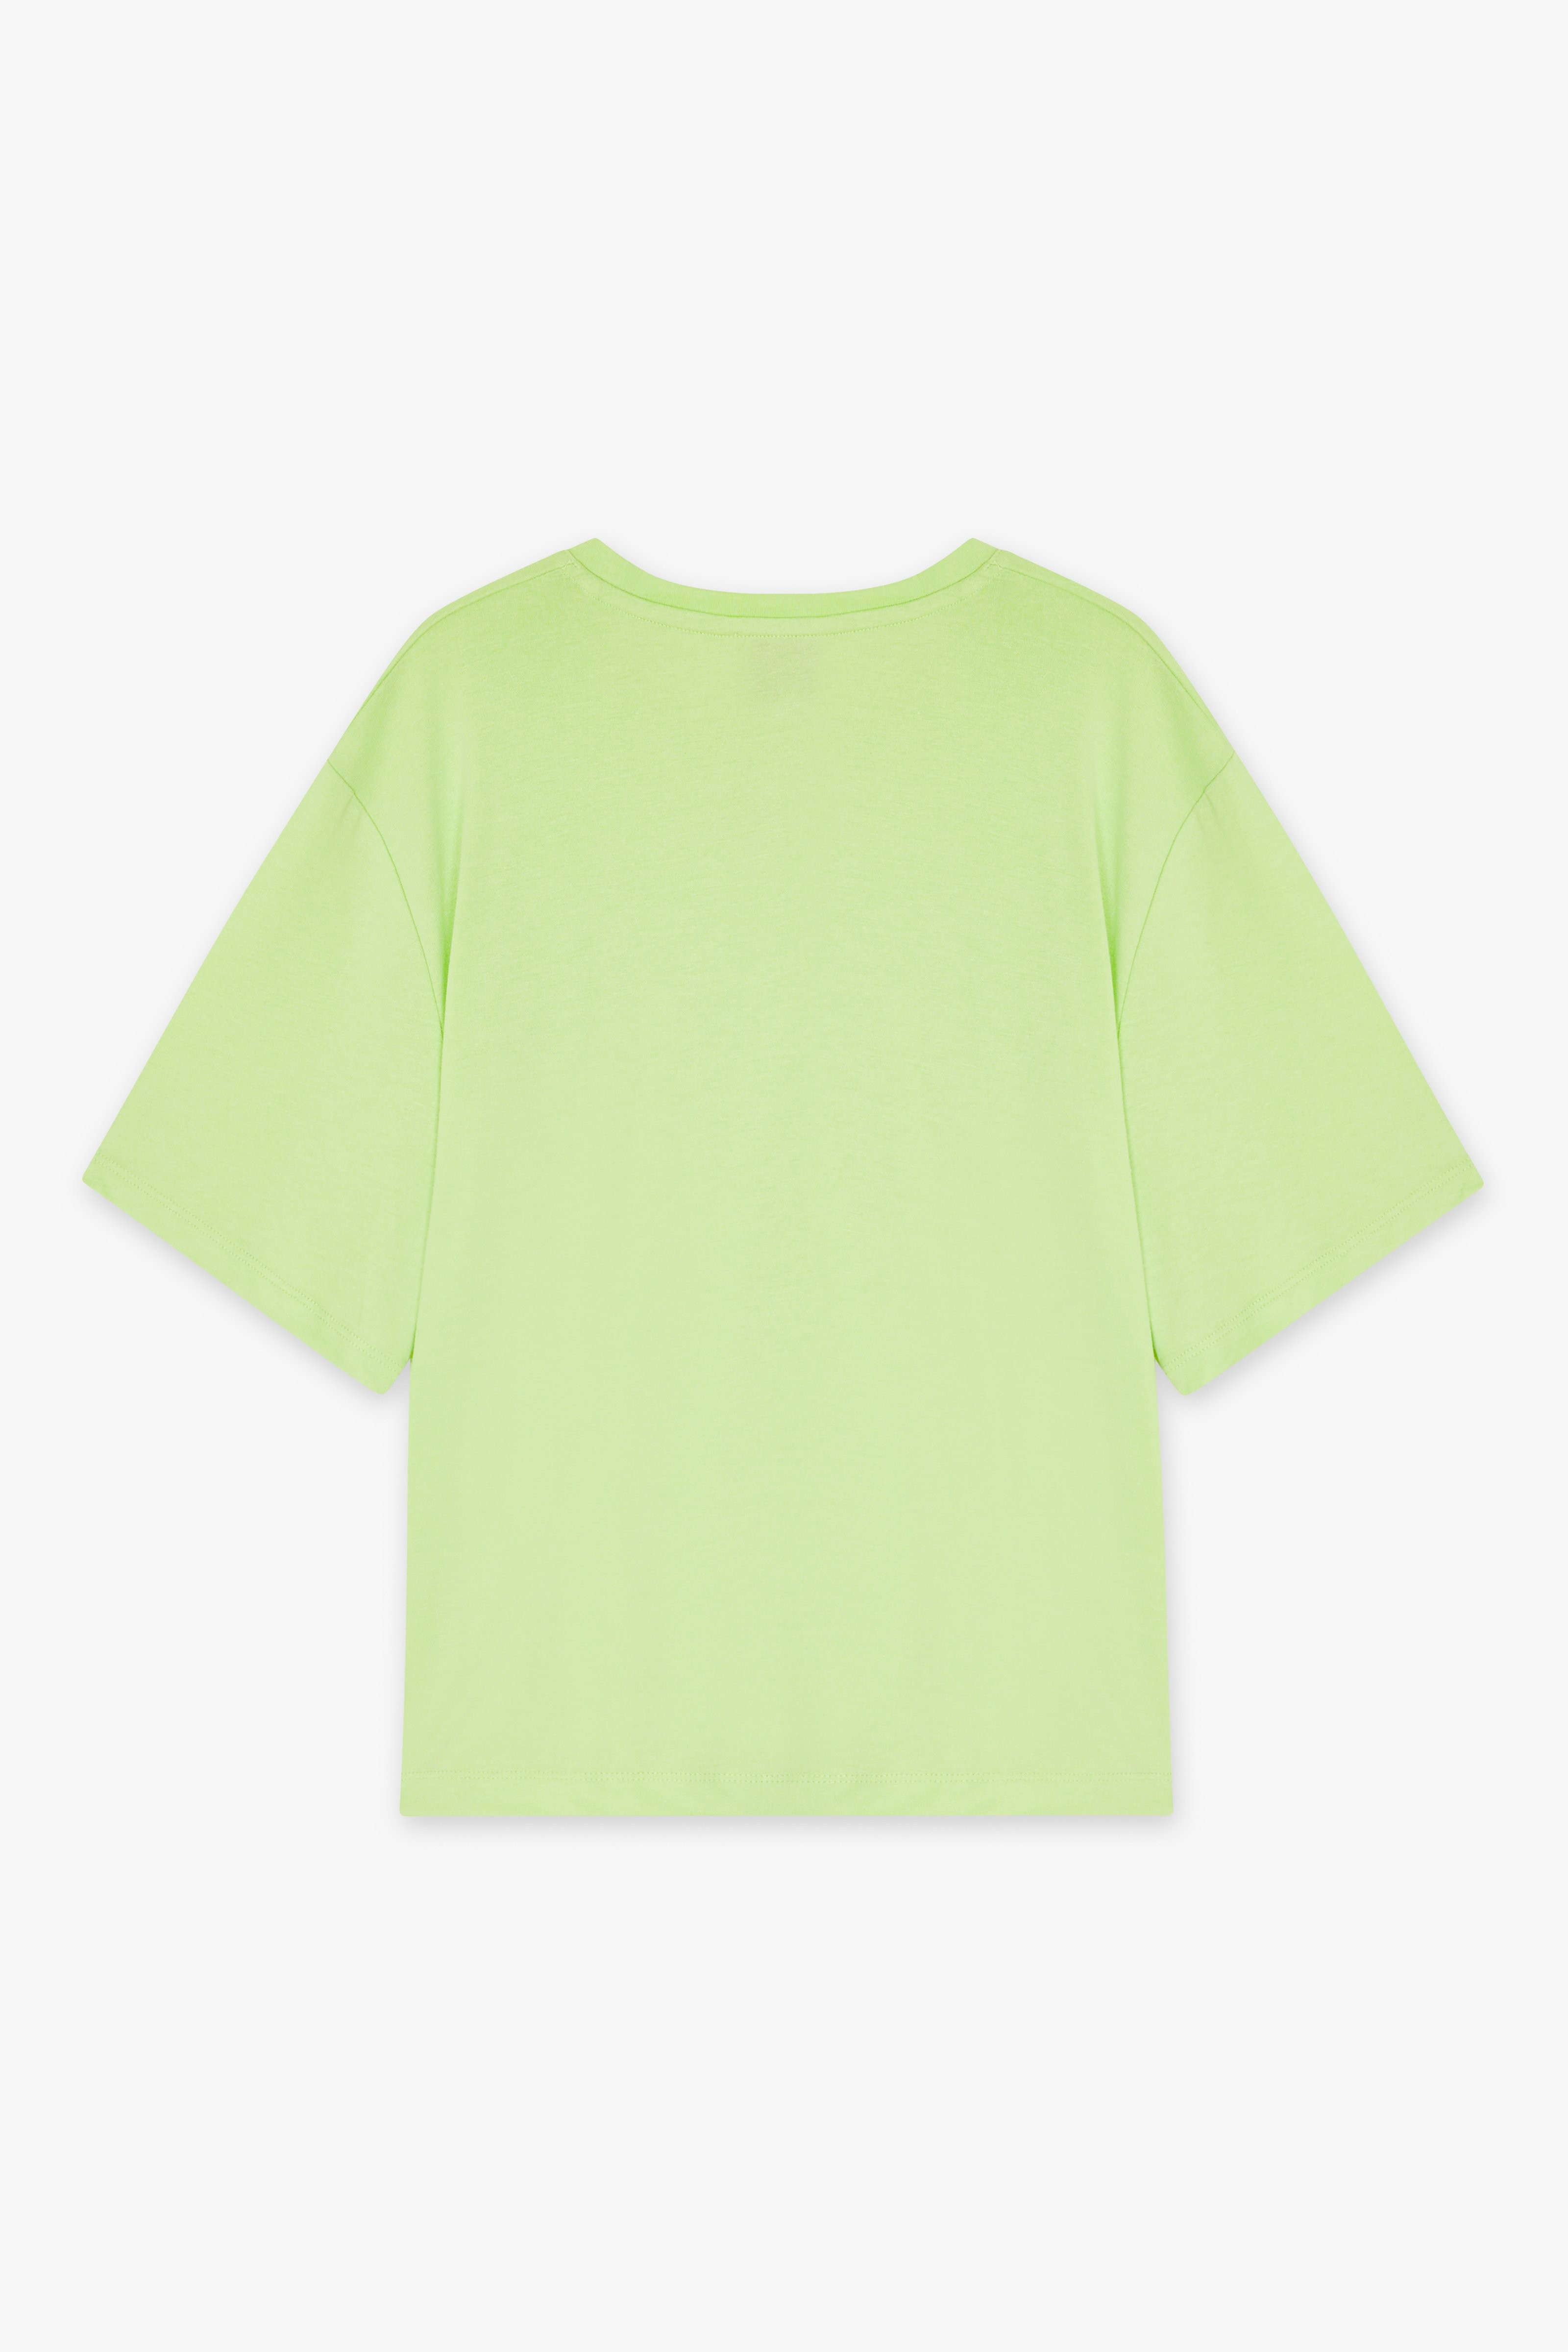 CKS Dames - TWIST - t-shirt short sleeves - light green